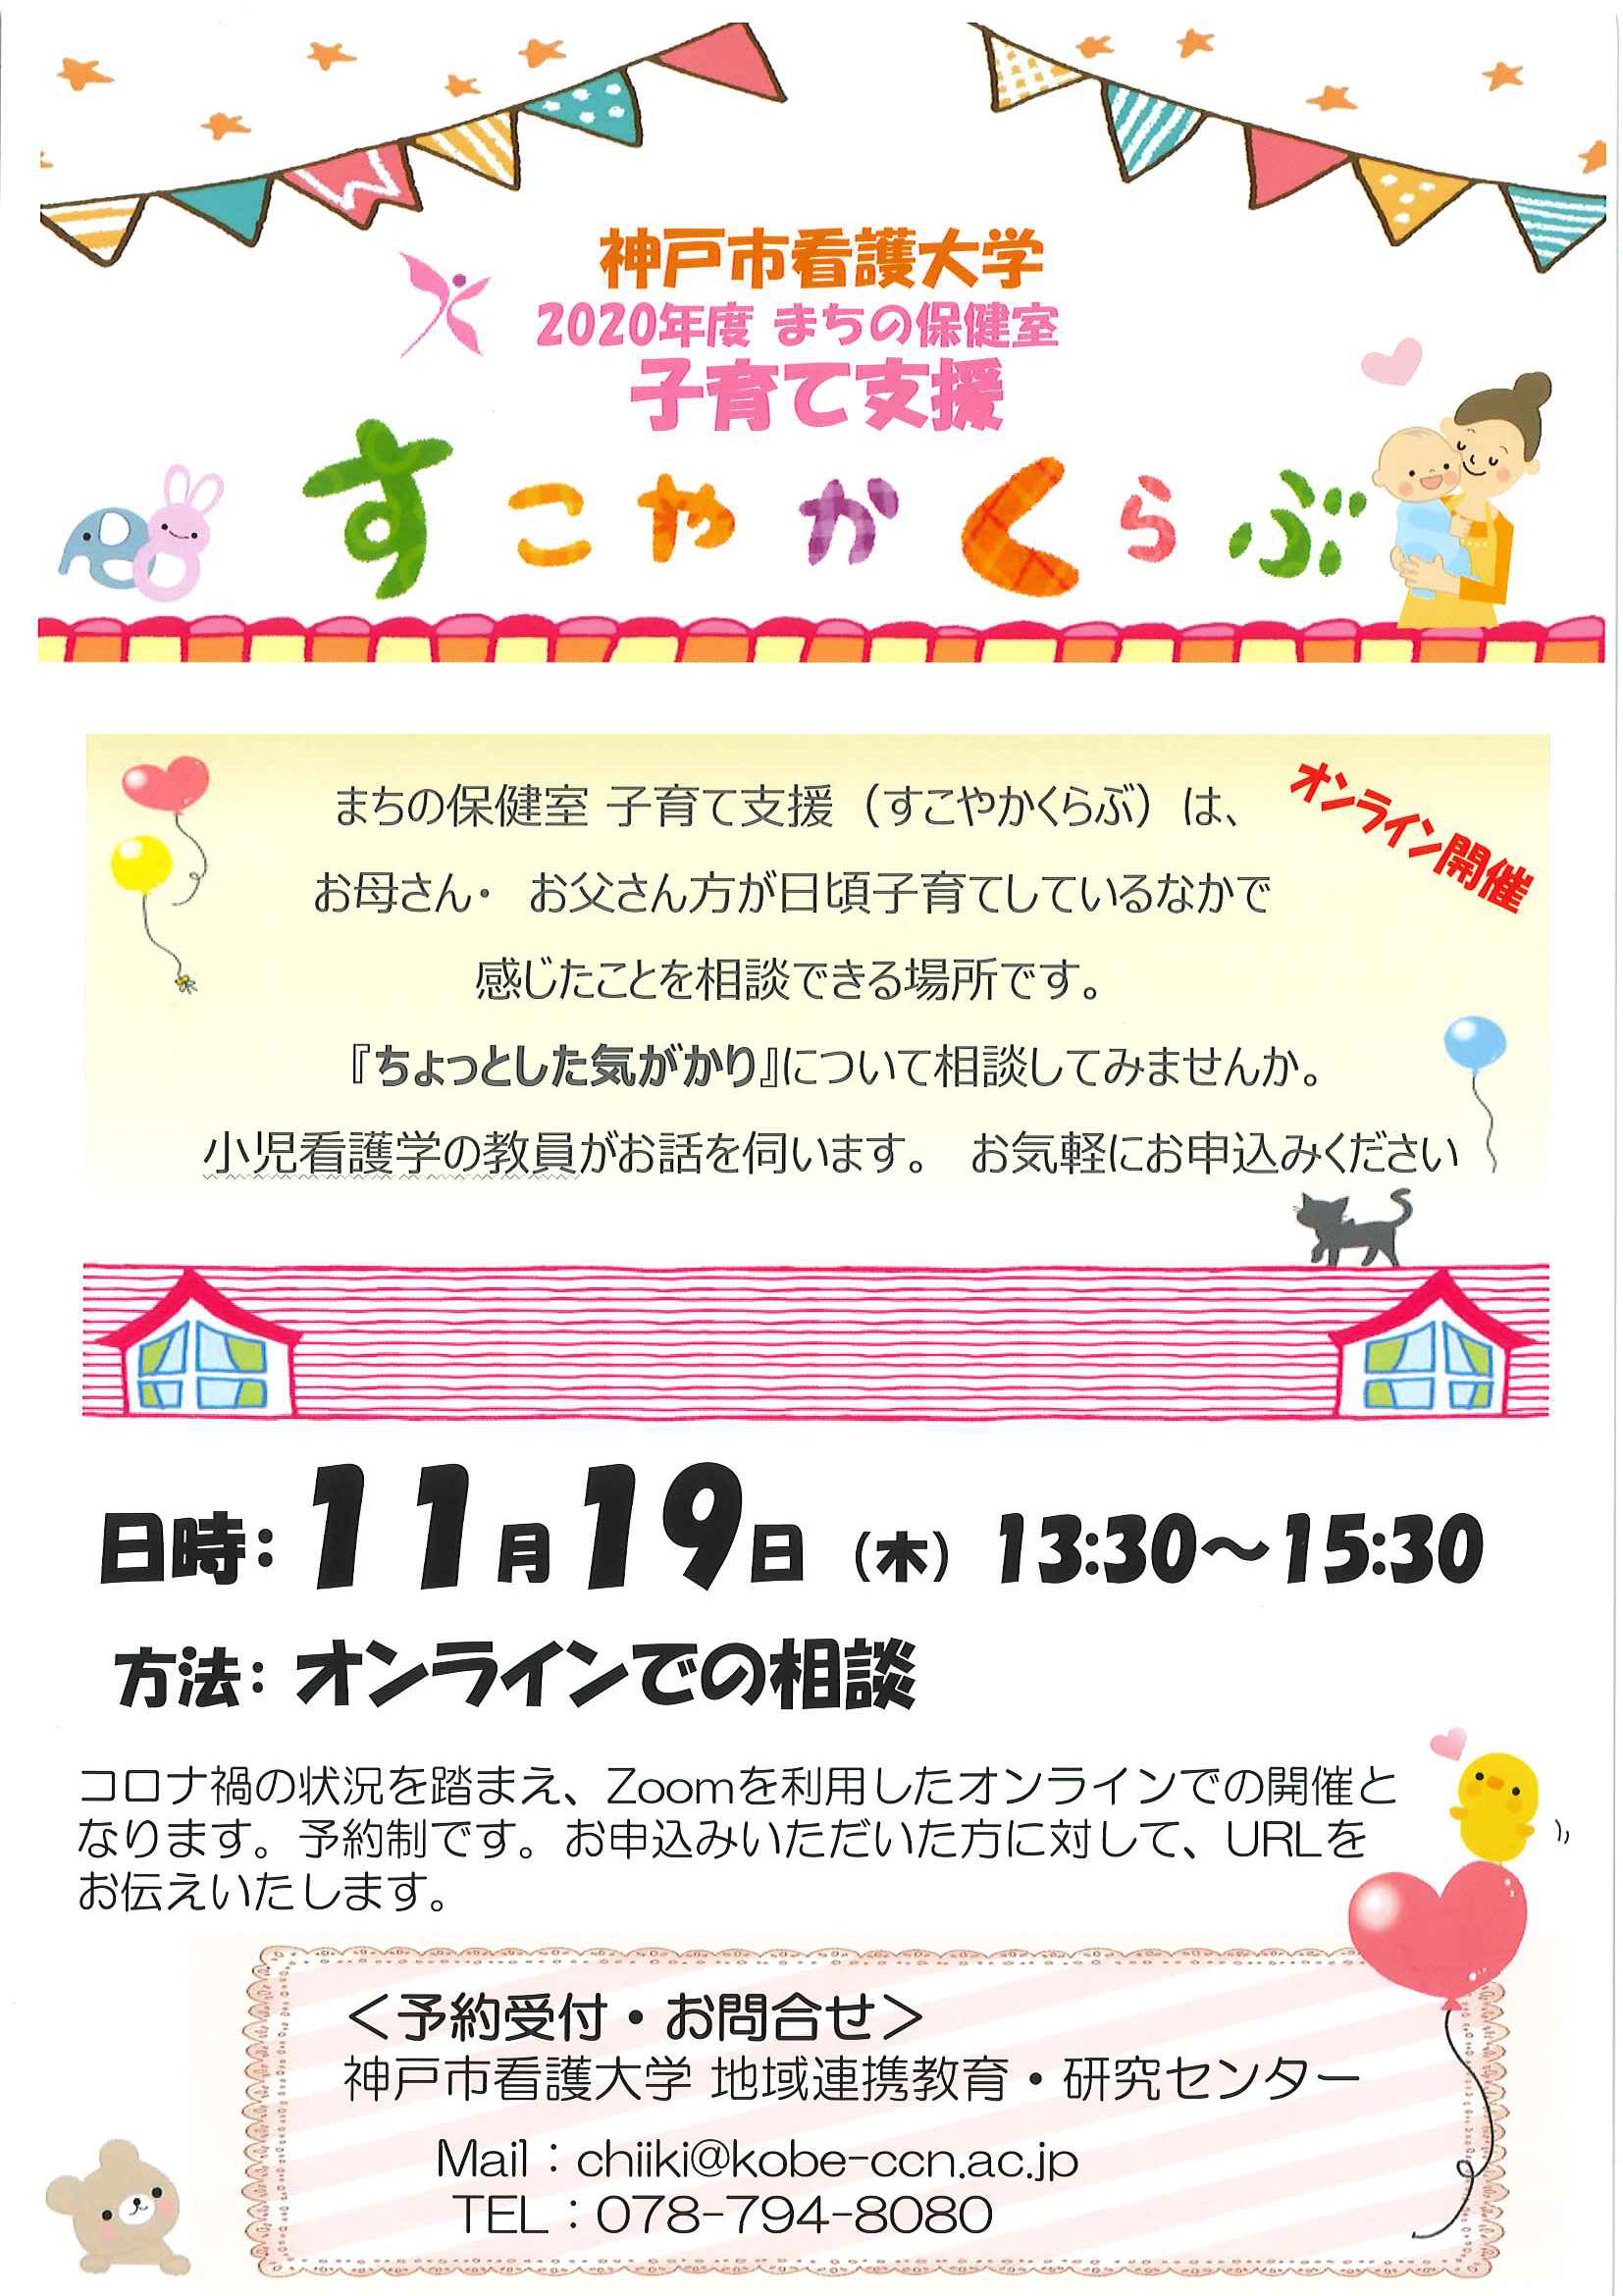 まちの保健室 年11月19日 木 すこやかクラブを開催します 子育て支援 まちの保健室 イベント お知らせ 神戸市看護大学